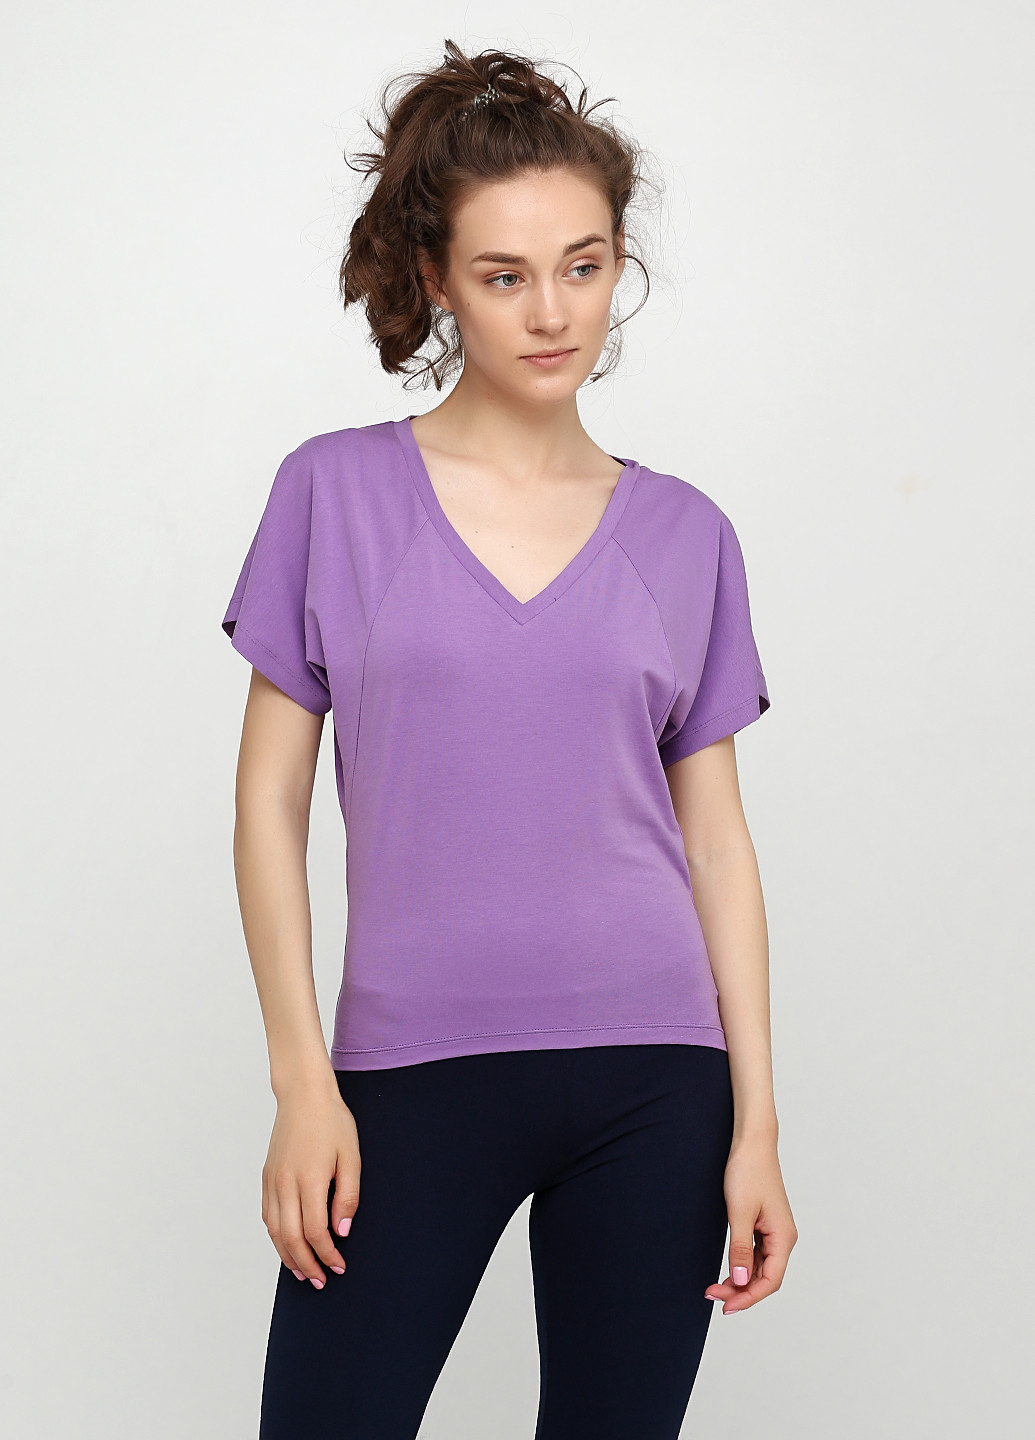 Фиолетовая всесезон футболка DIVO